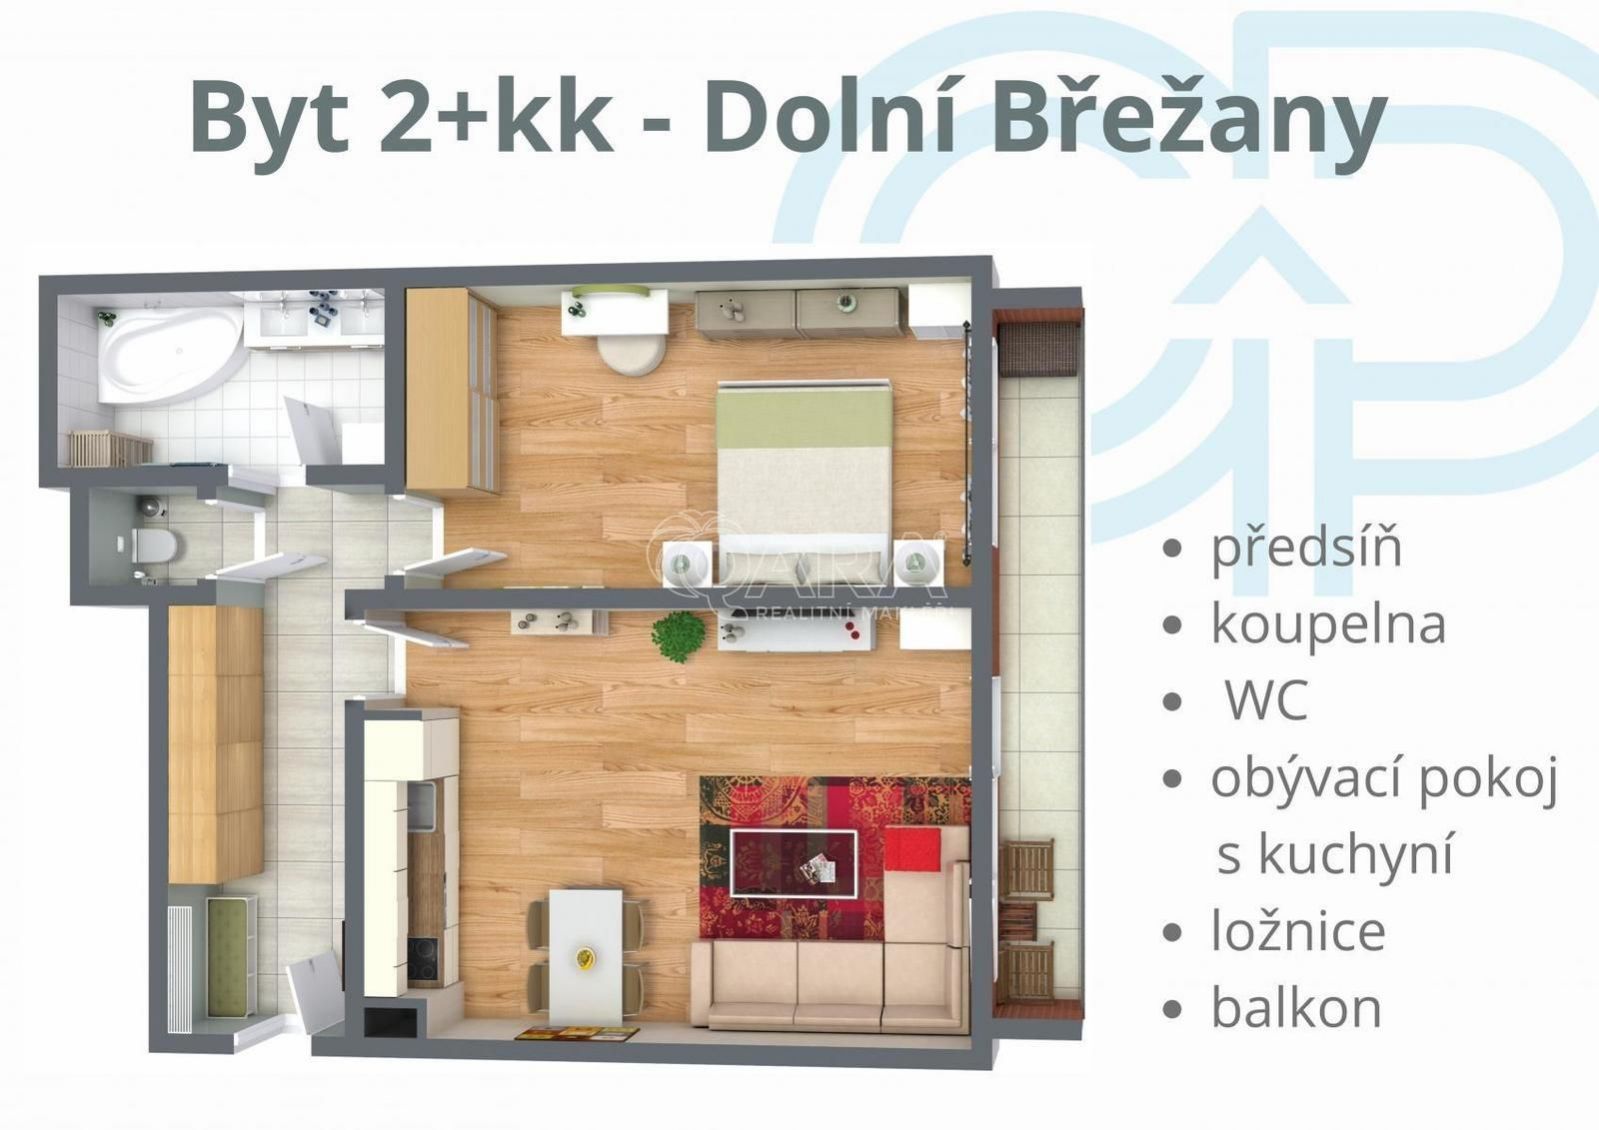 Útulný prosvětlený byt 2+kk ve skvělé lokalitě Dolních Břežan na prodej!, obrázek č. 2